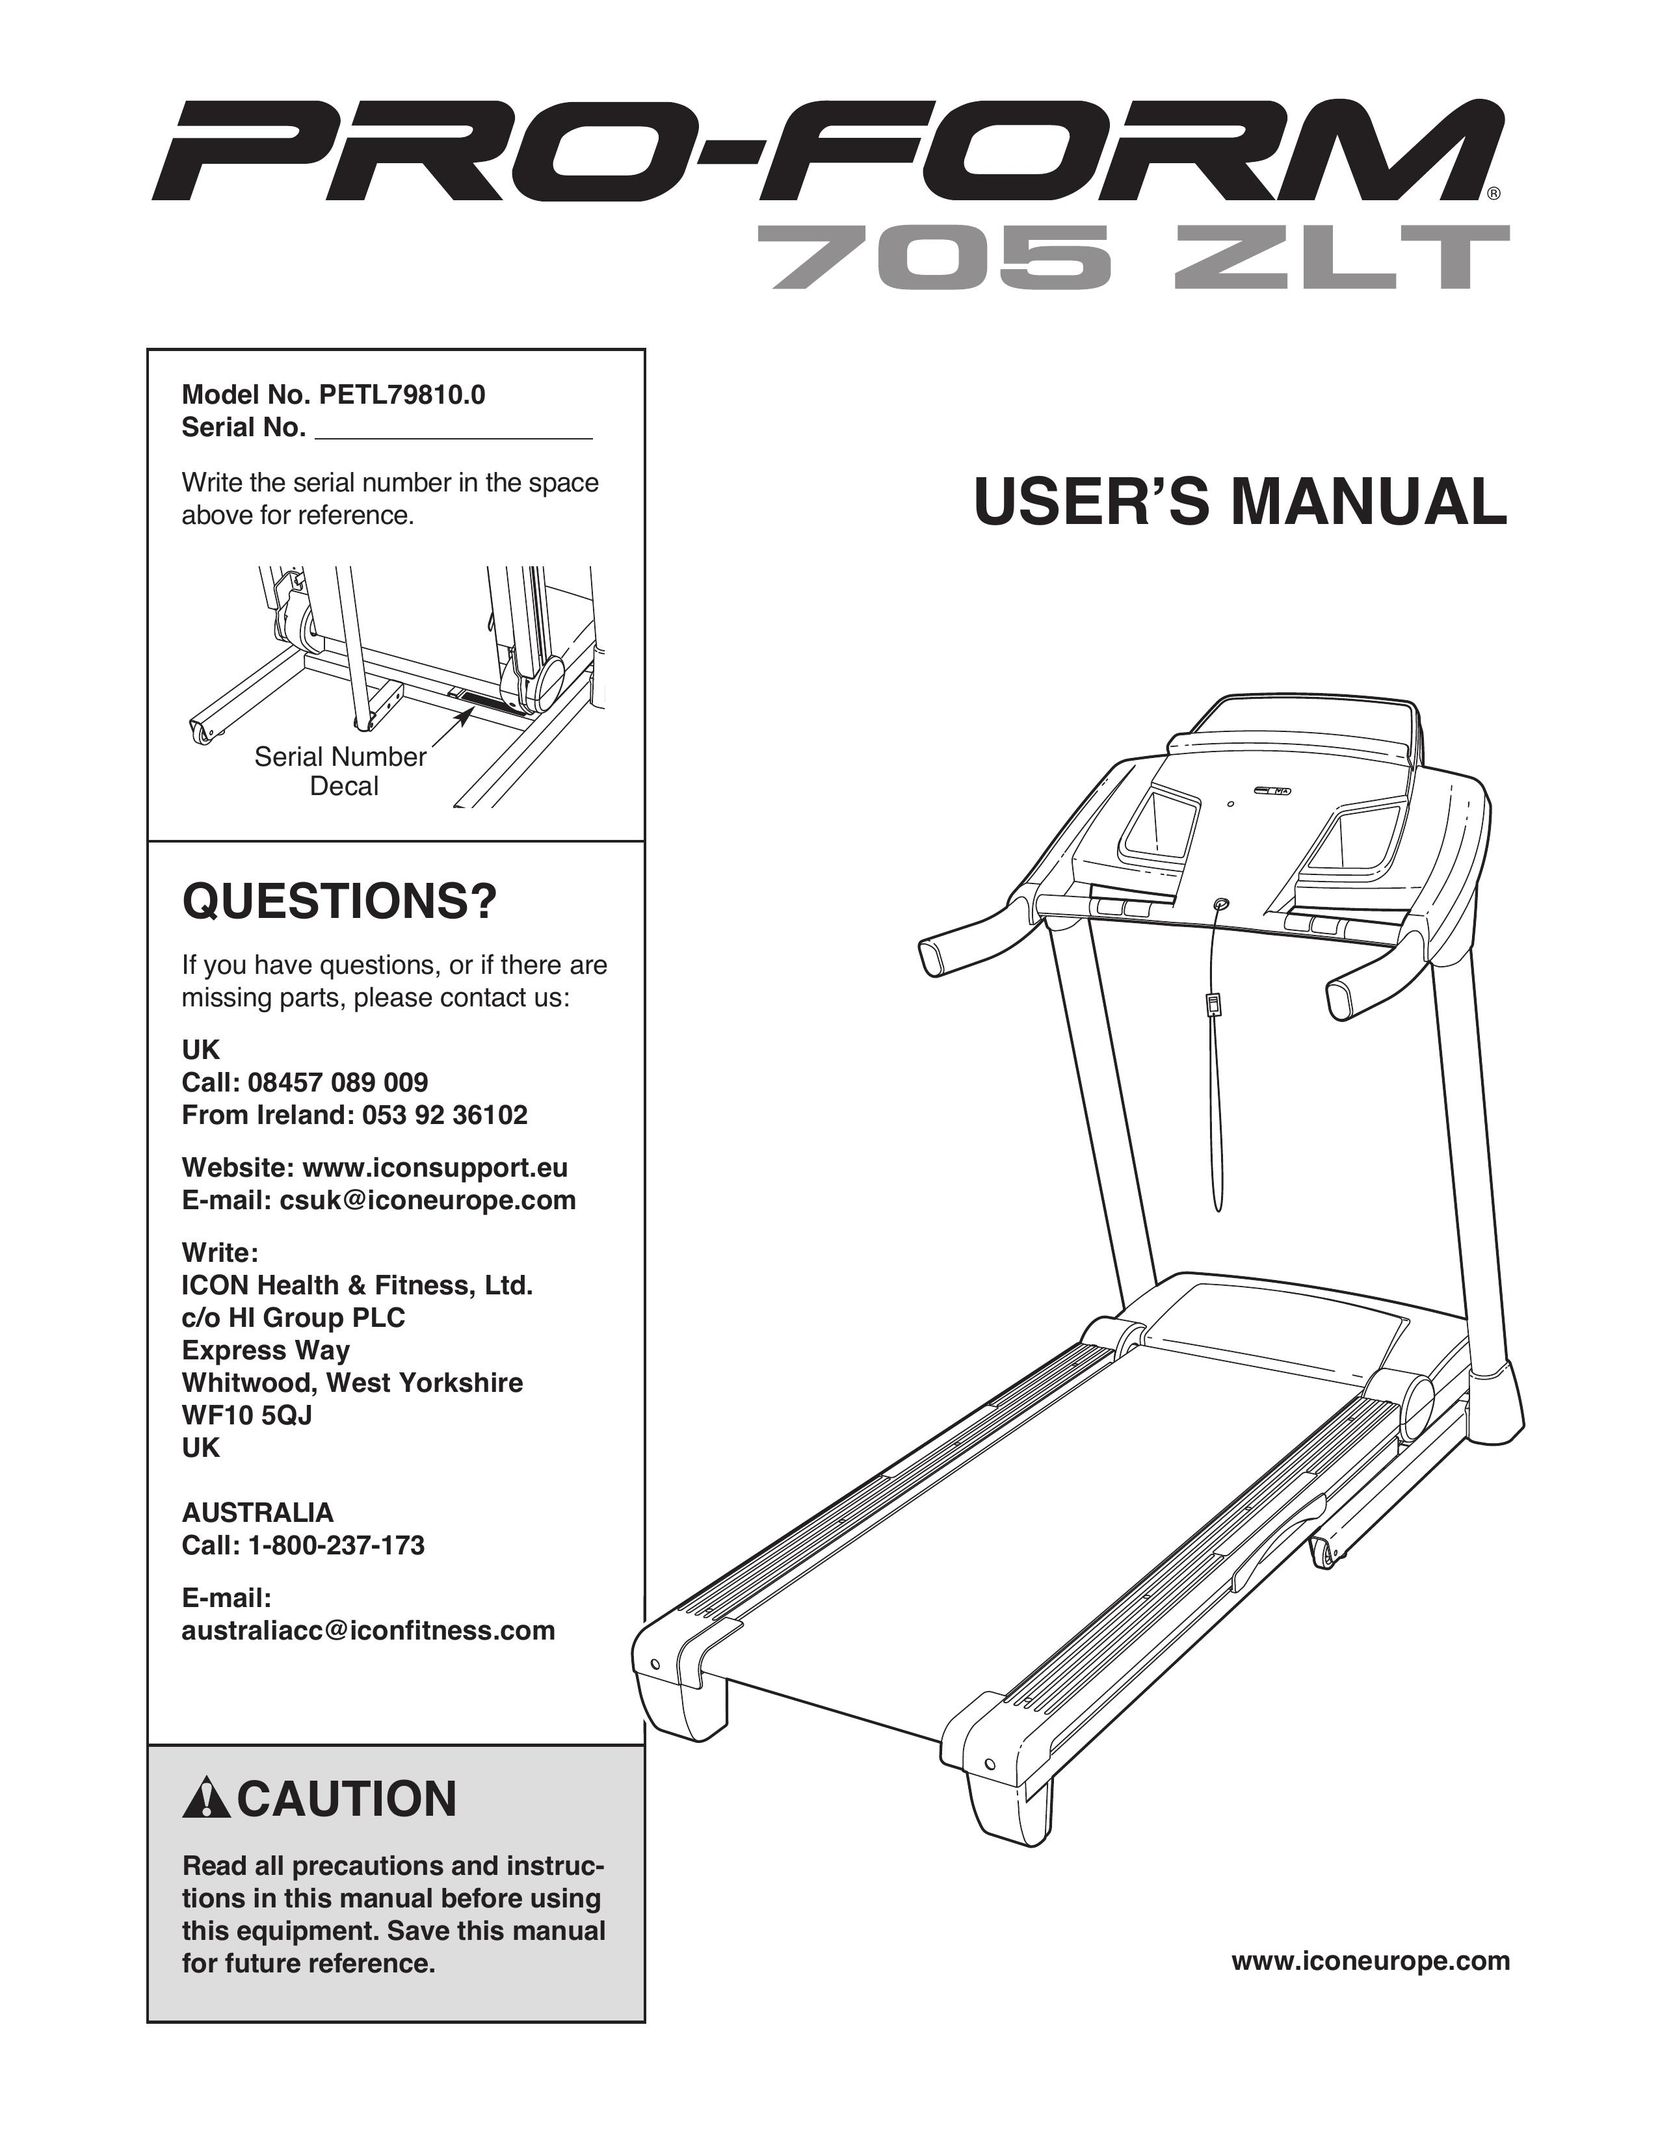 ProForm 705 ZLT Treadmill User Manual